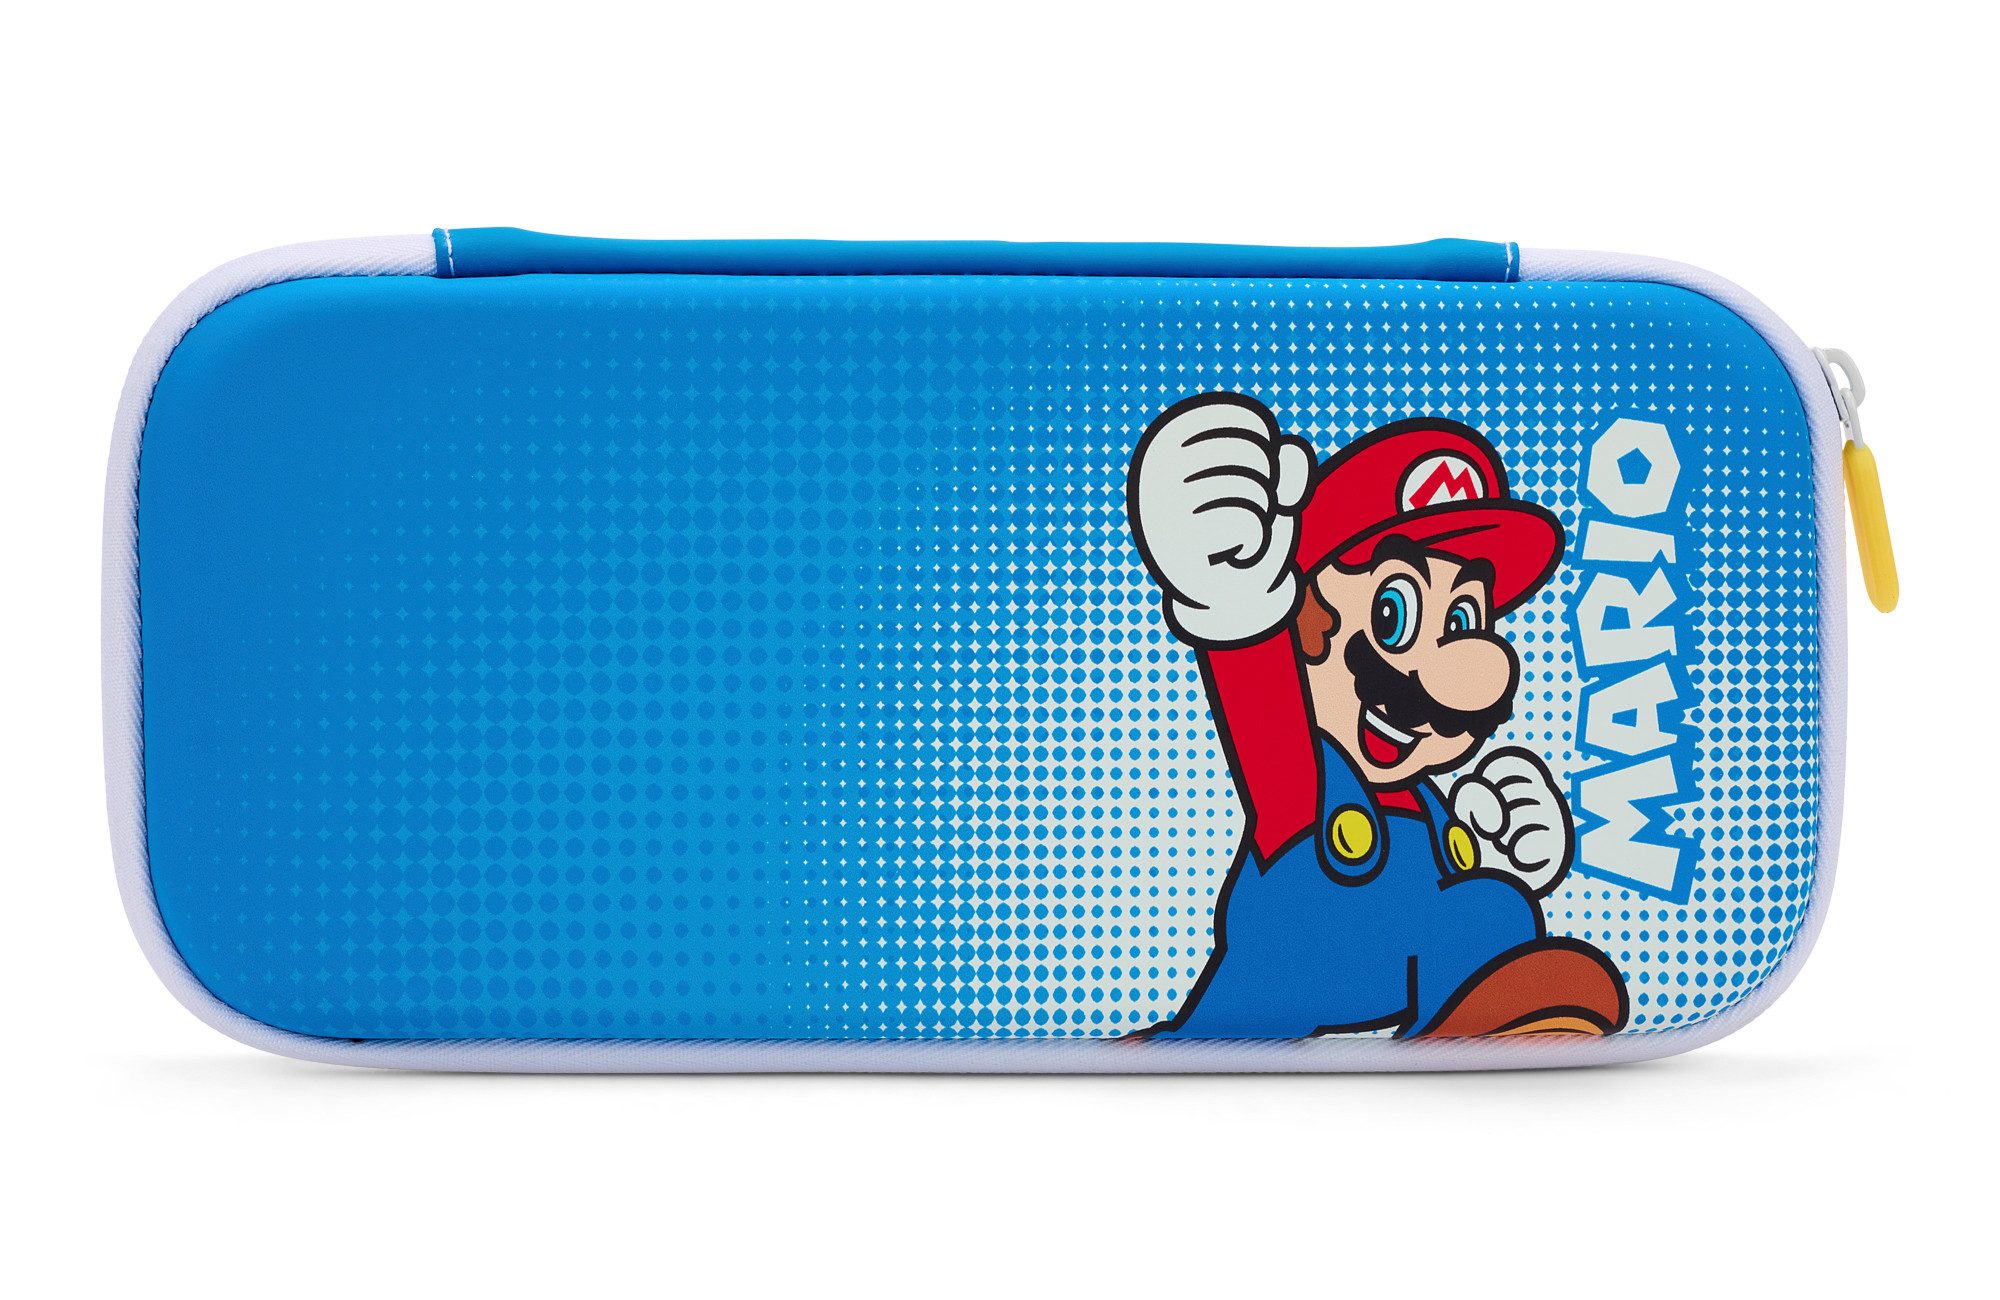 PowerA Nintendo-Schutzhülle Nintendo Switch Protection Case - Mario Pop Art (NEU & OVP)